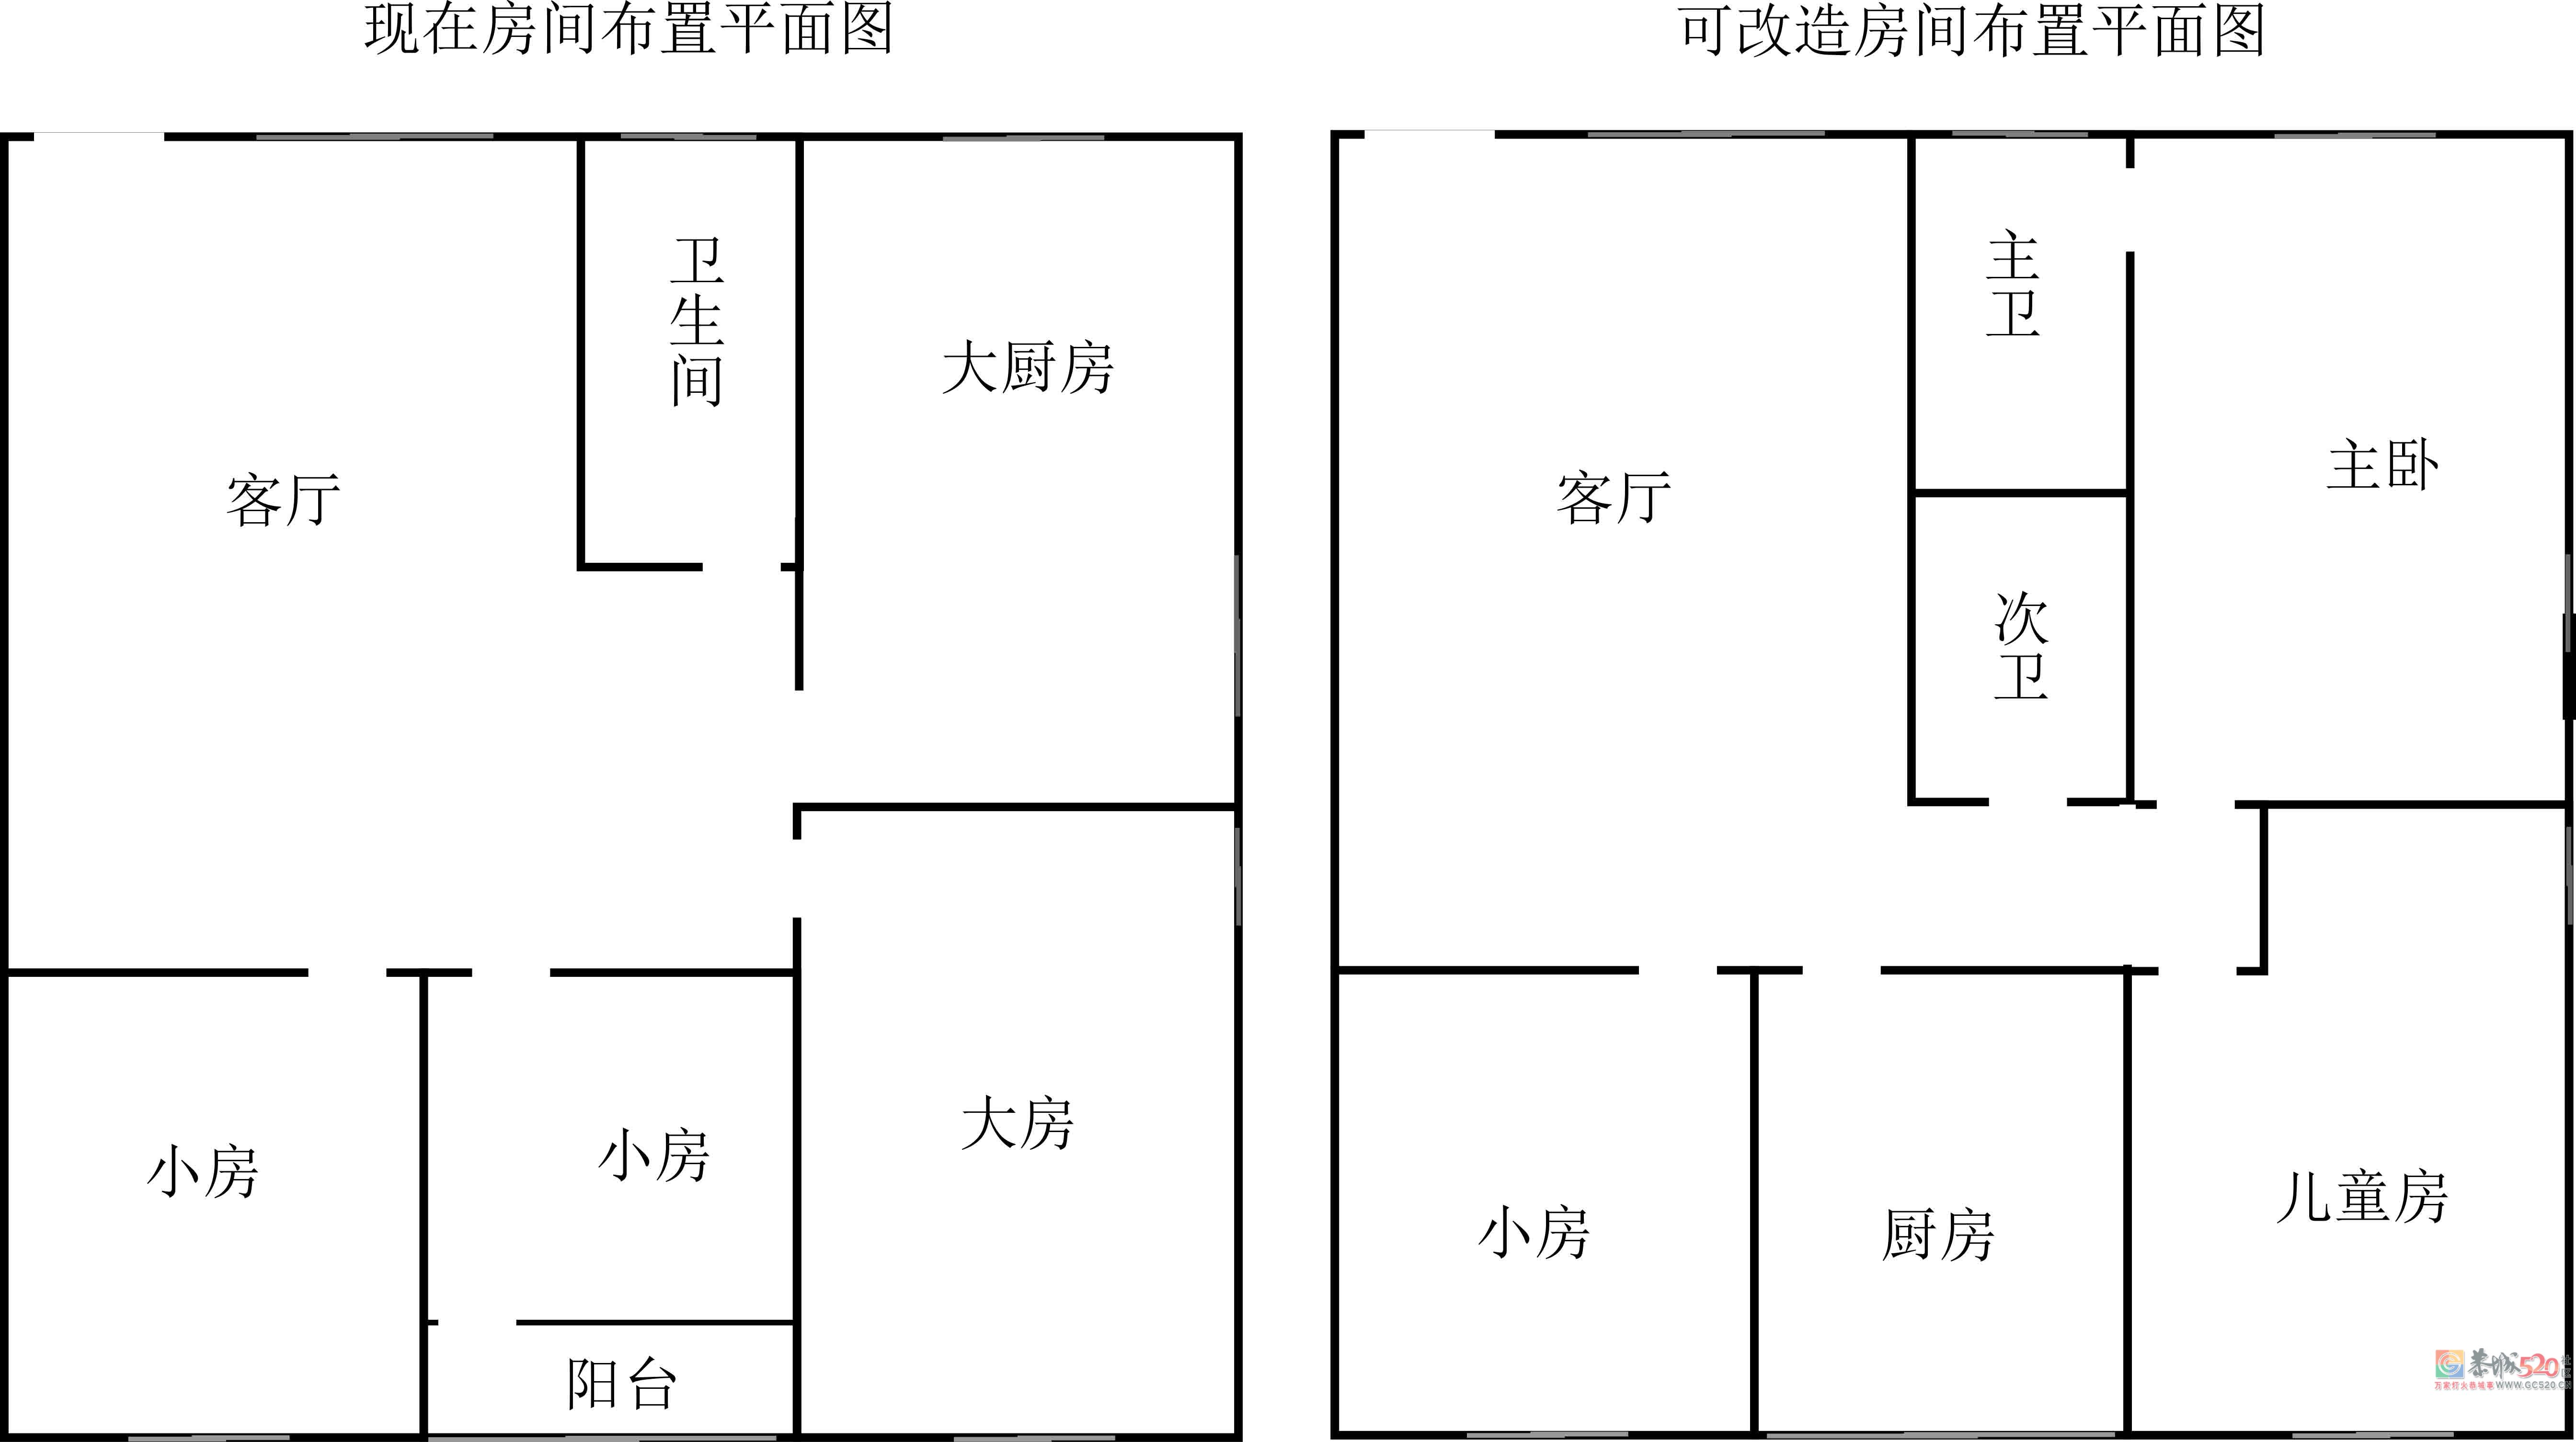 县城正中心一小学区房出售949 / 作者:新乐文化传媒 / 帖子ID:261738